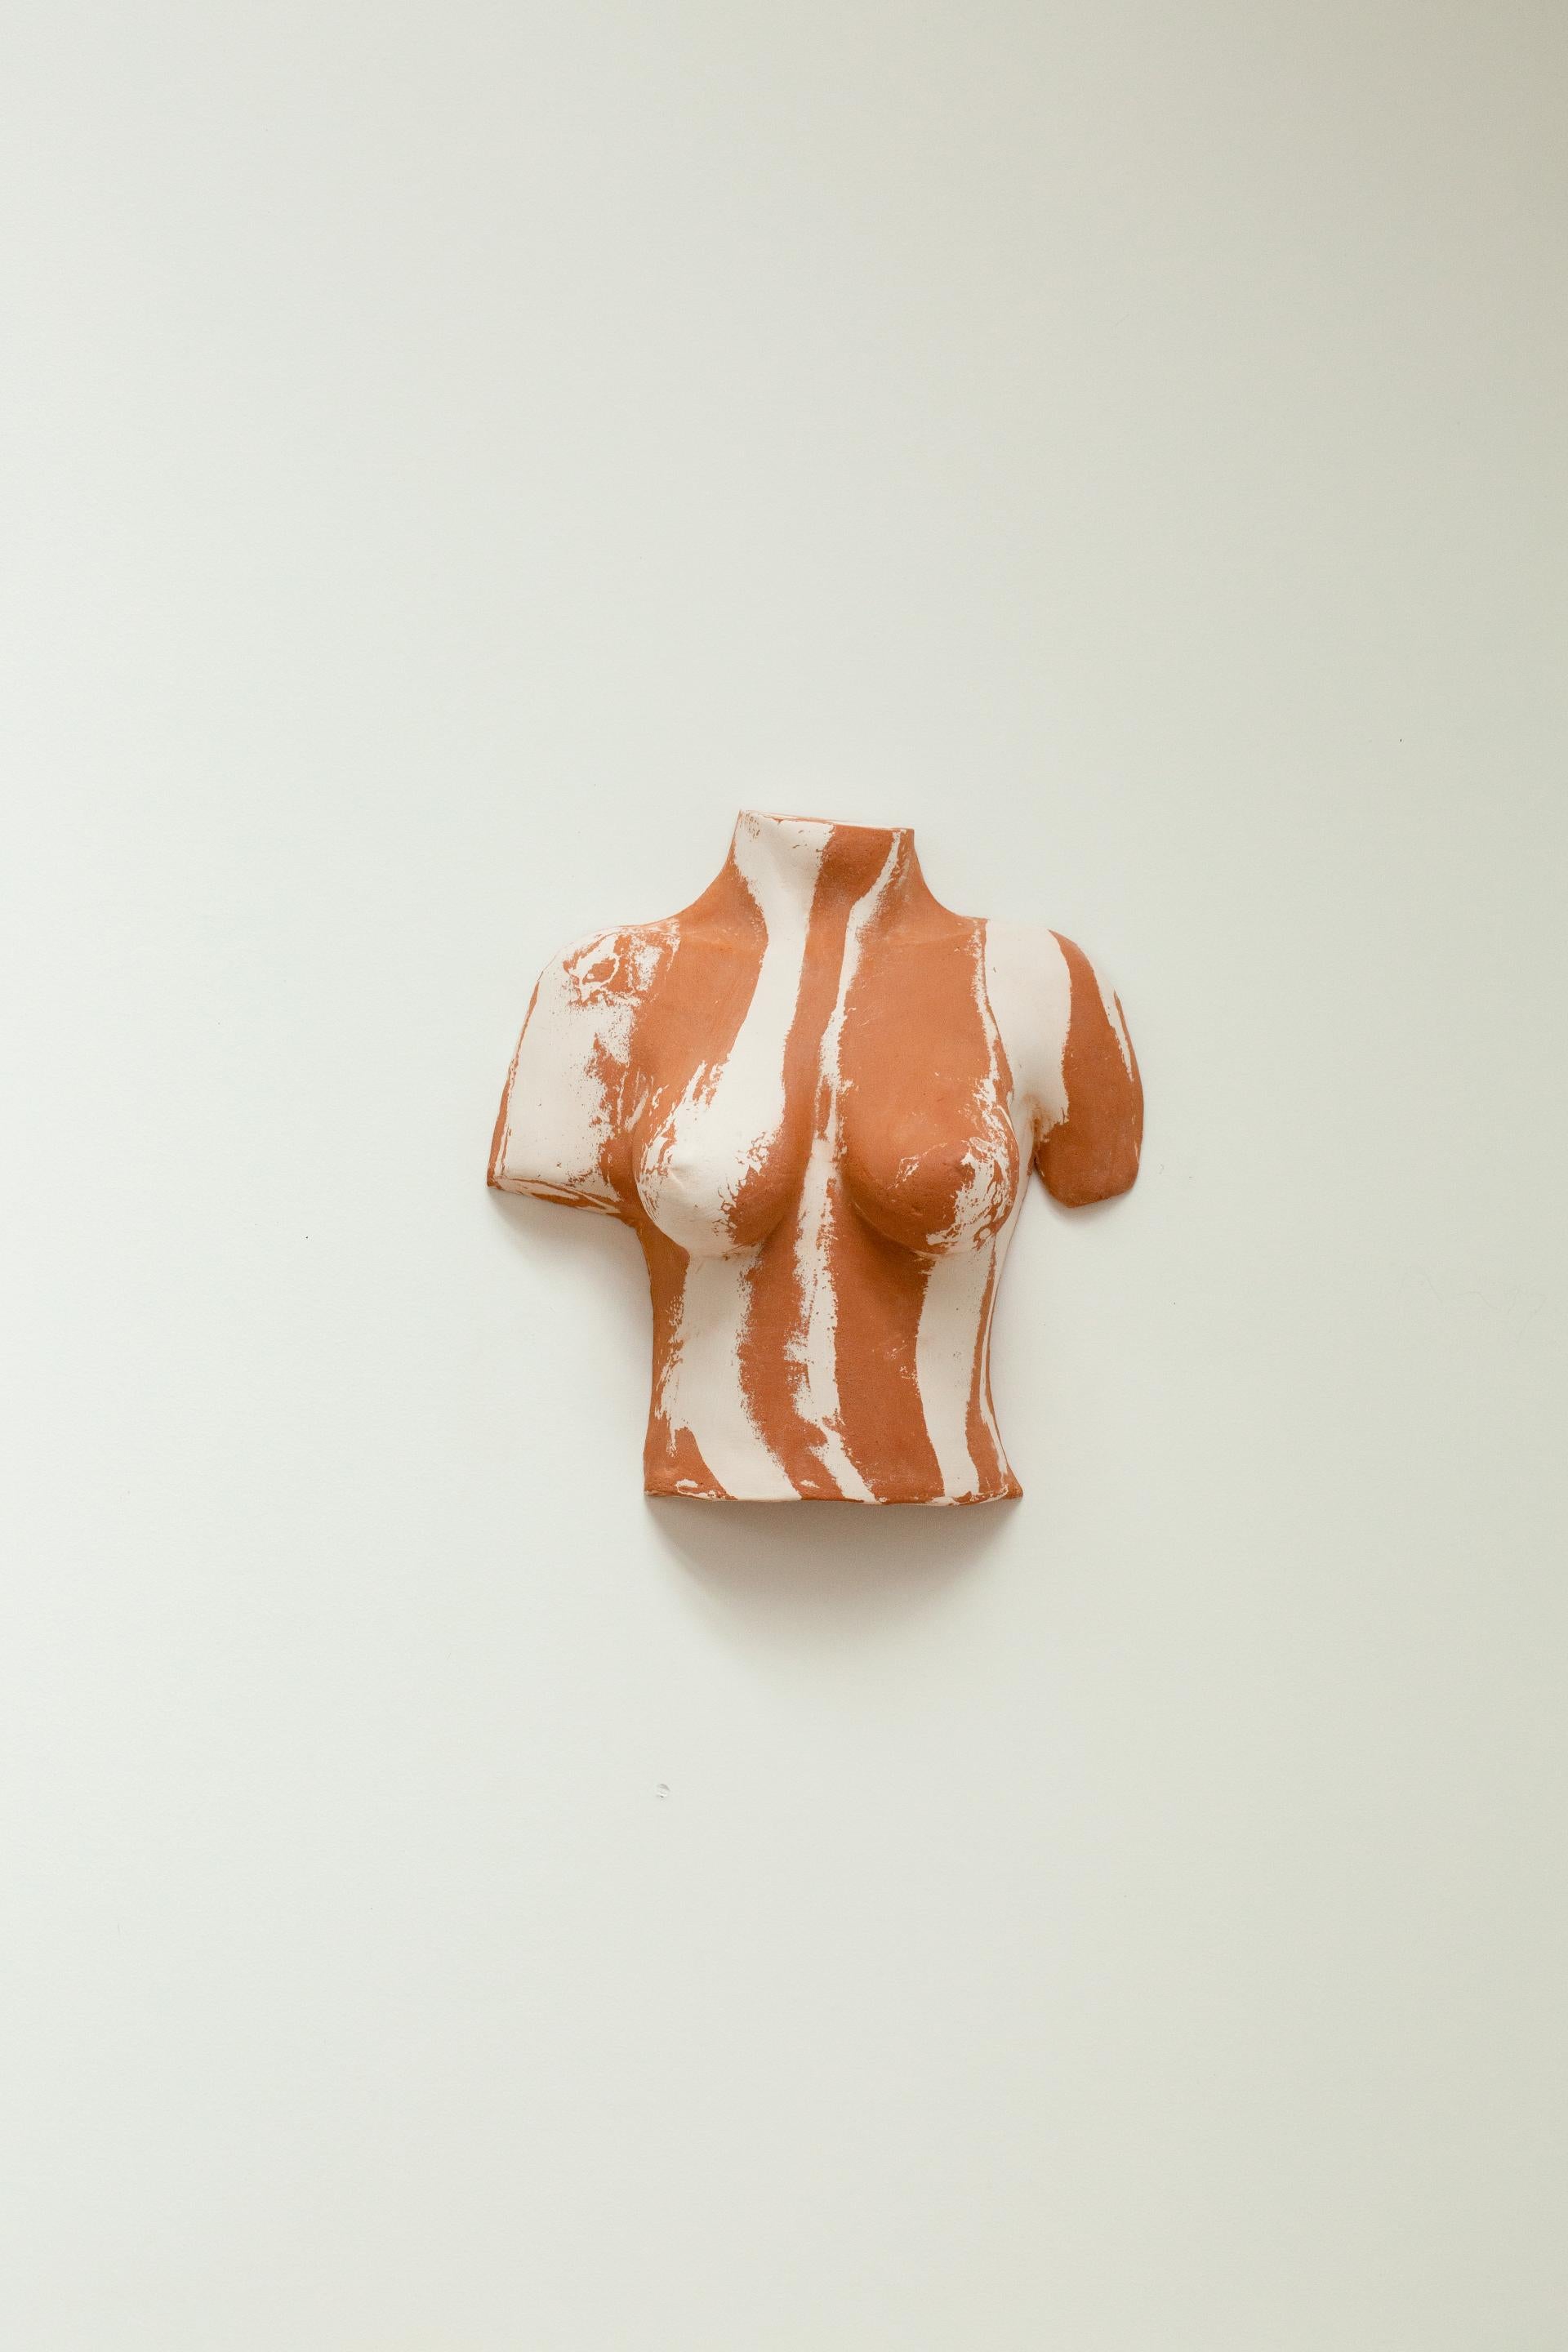 Terracotta Brut Body Sconces by Di Fretto For Sale 2